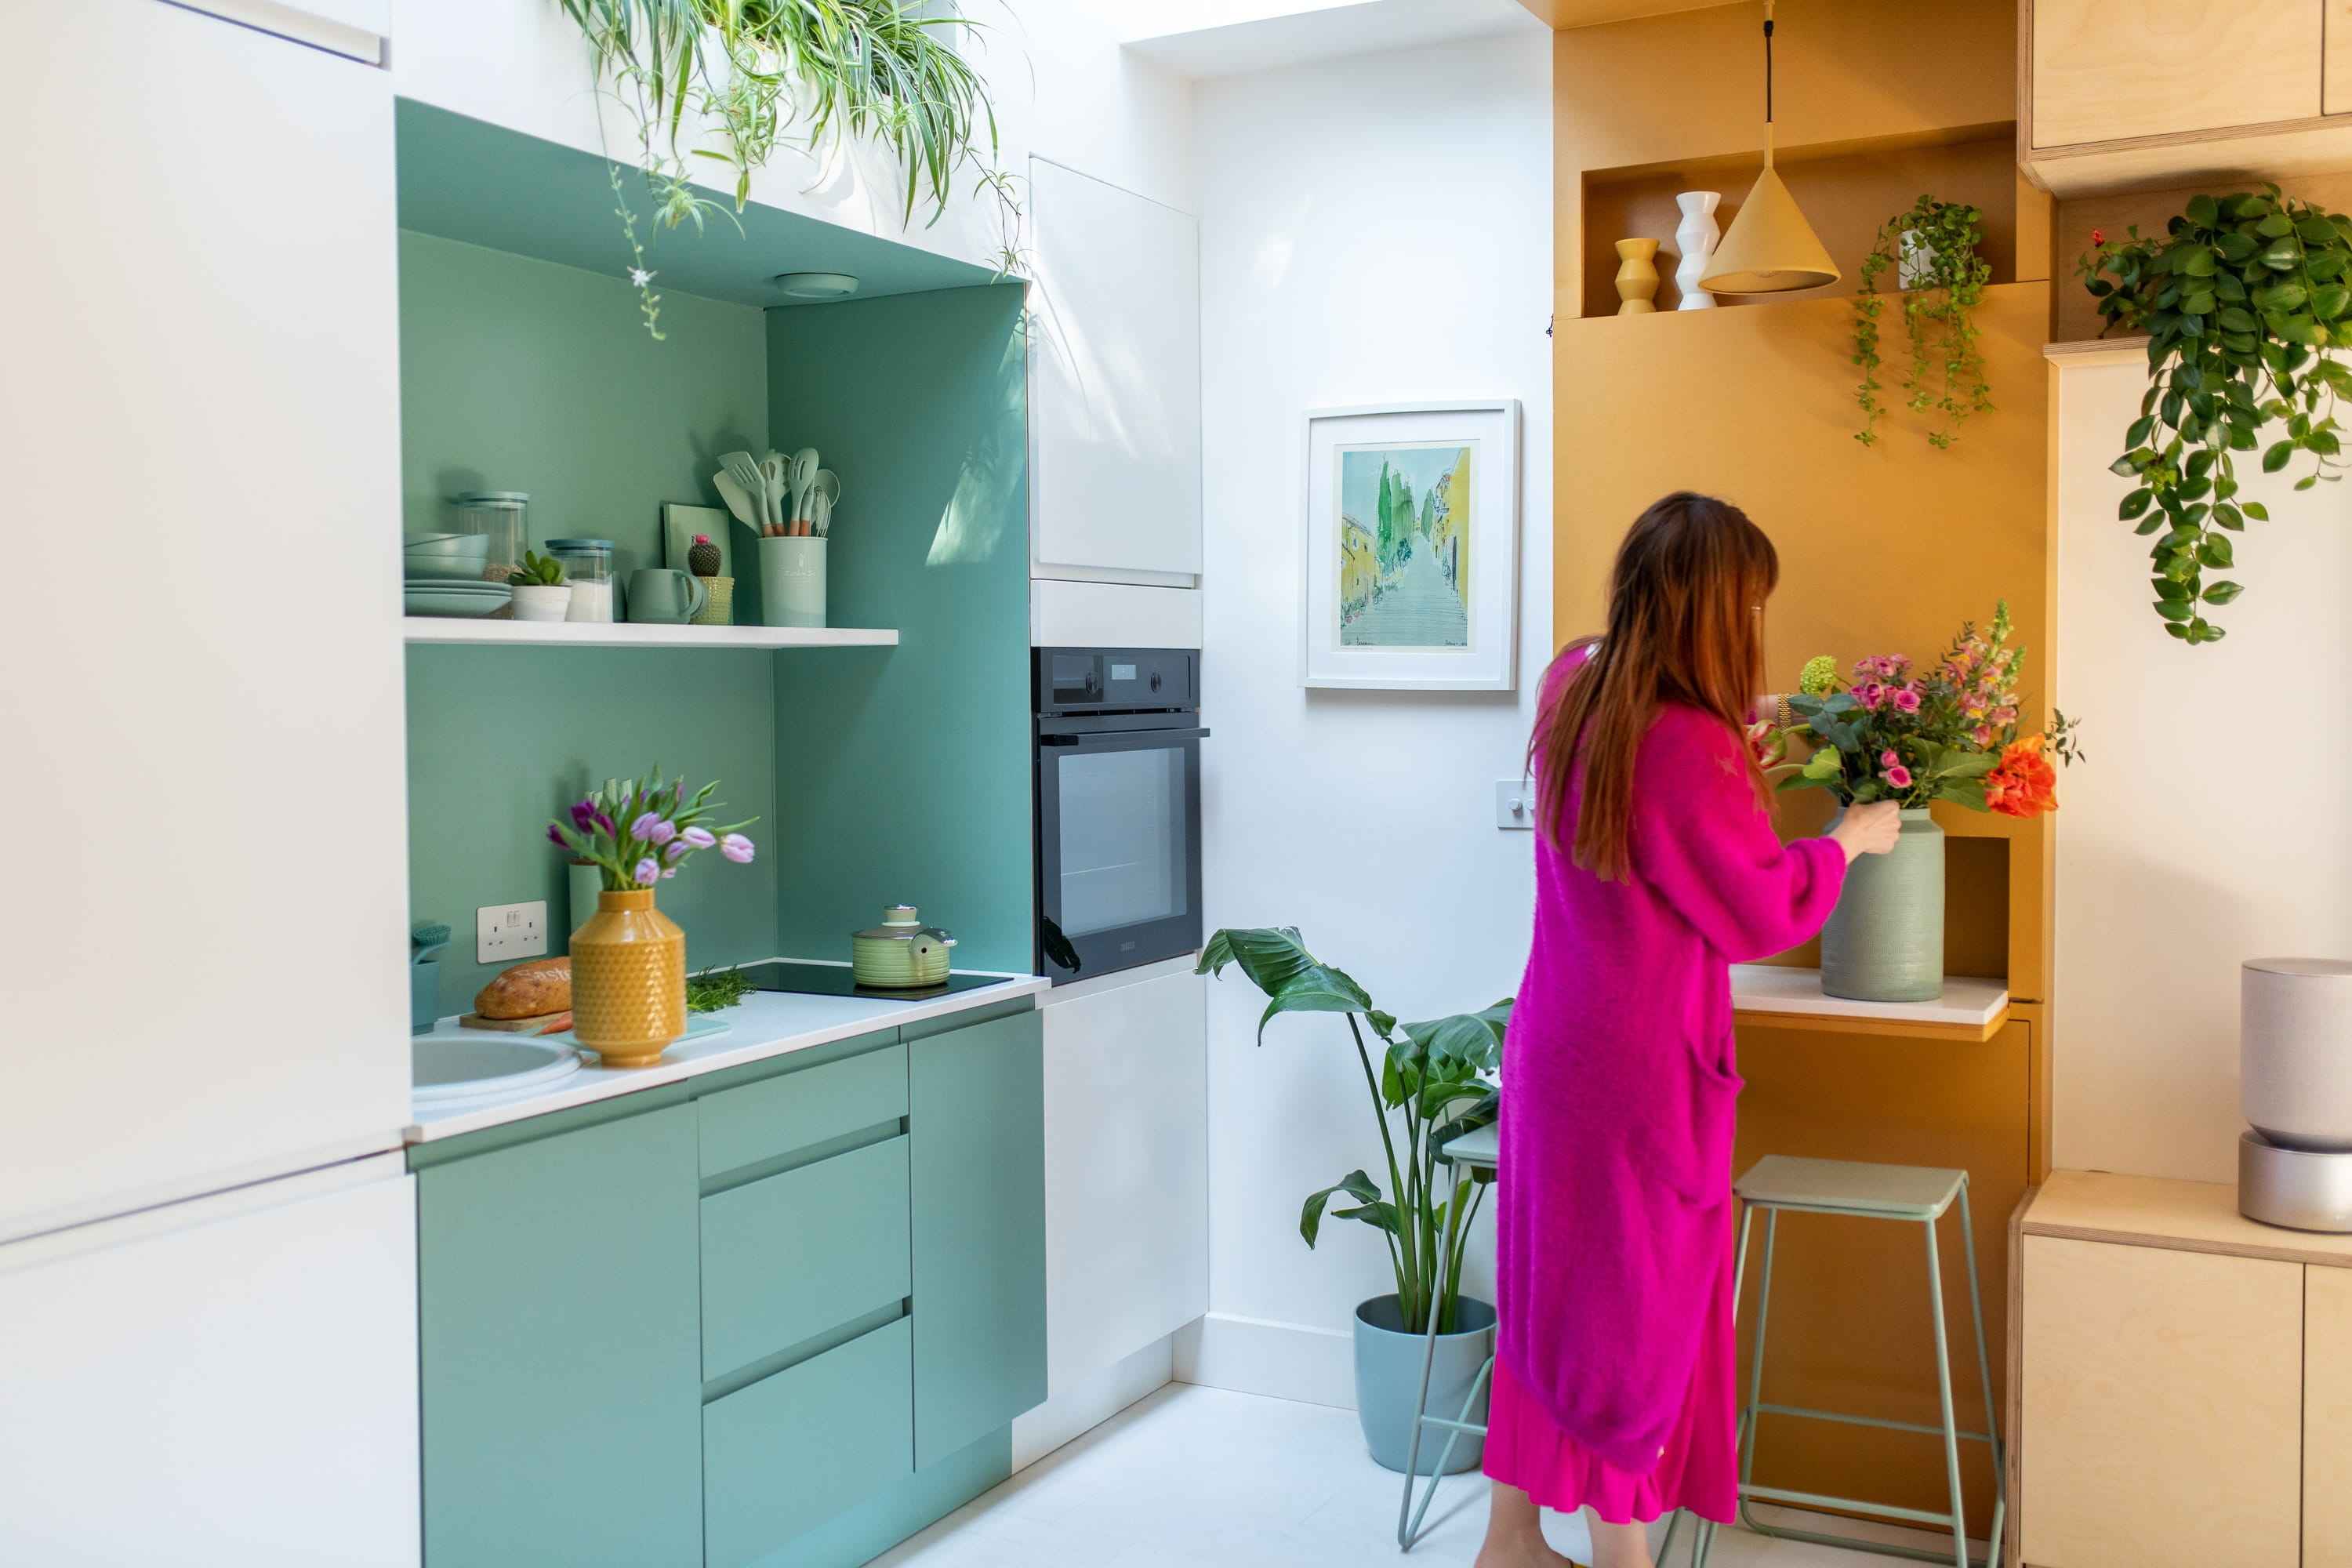 Donna in rosa che sistema fiori in una cucina moderna turchese e gialla con piante.